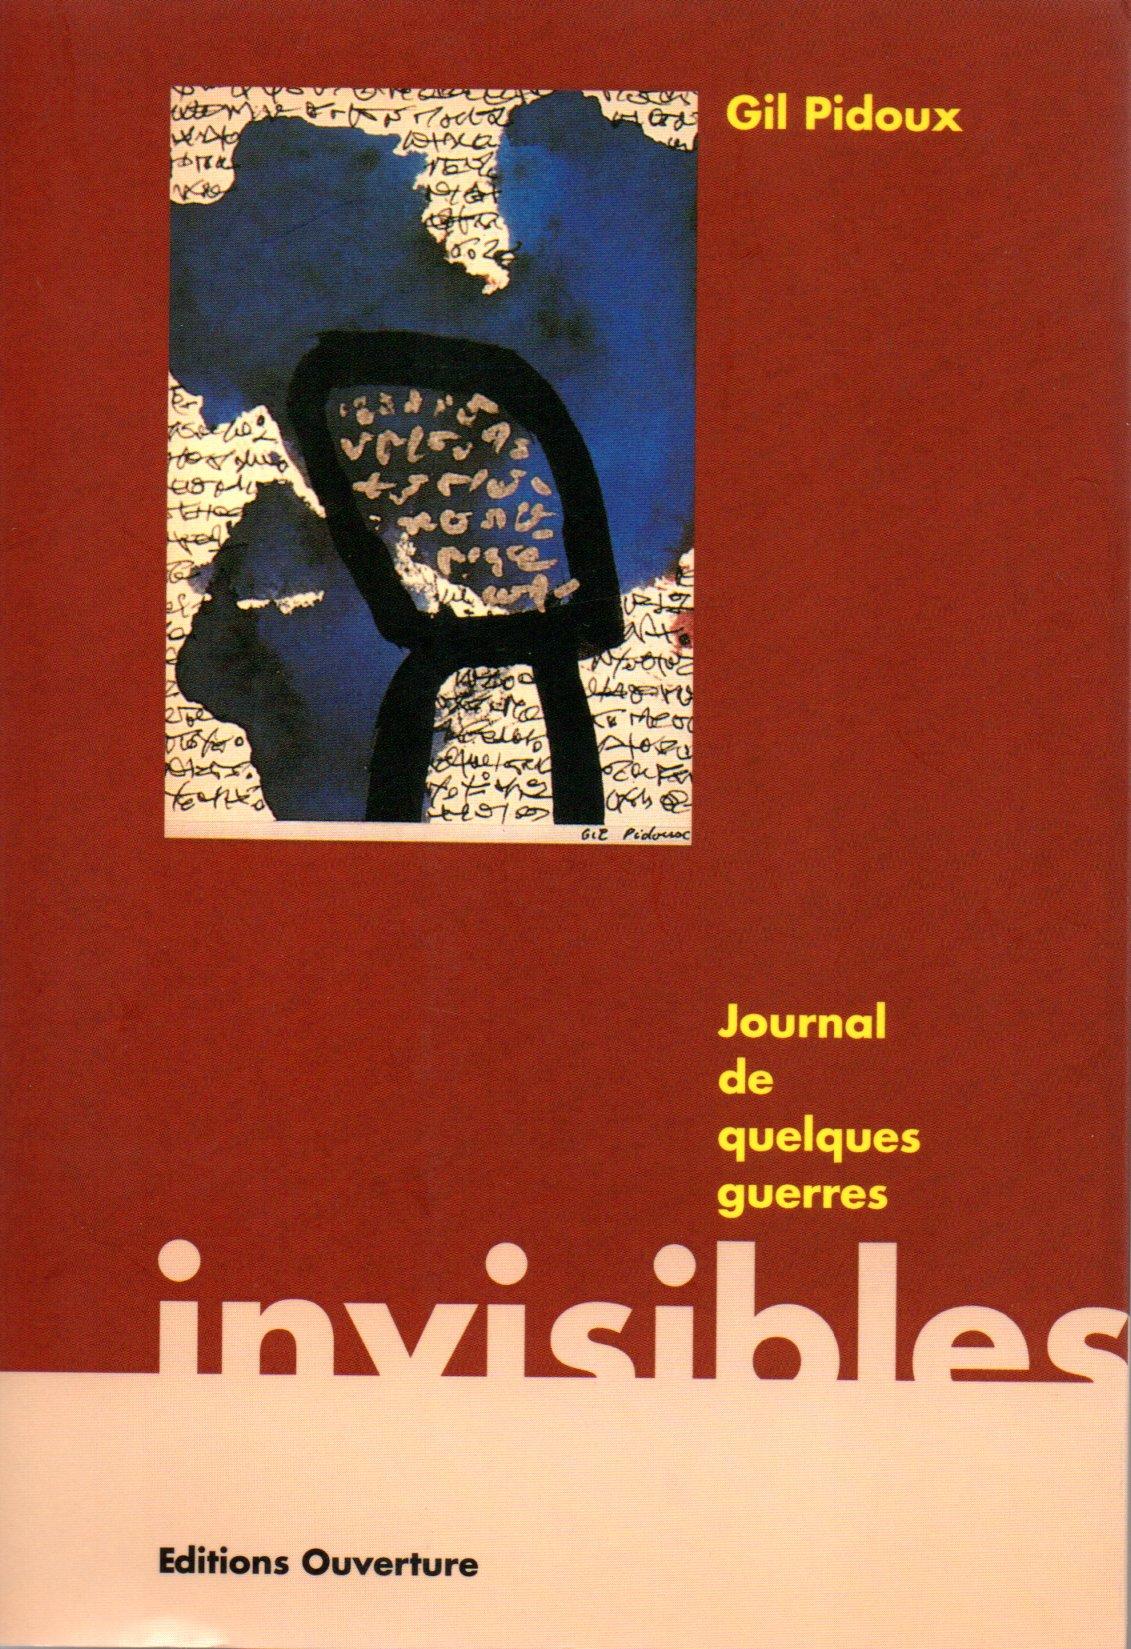 Gil pidoux journal des guerres invisibles20210125 16274031